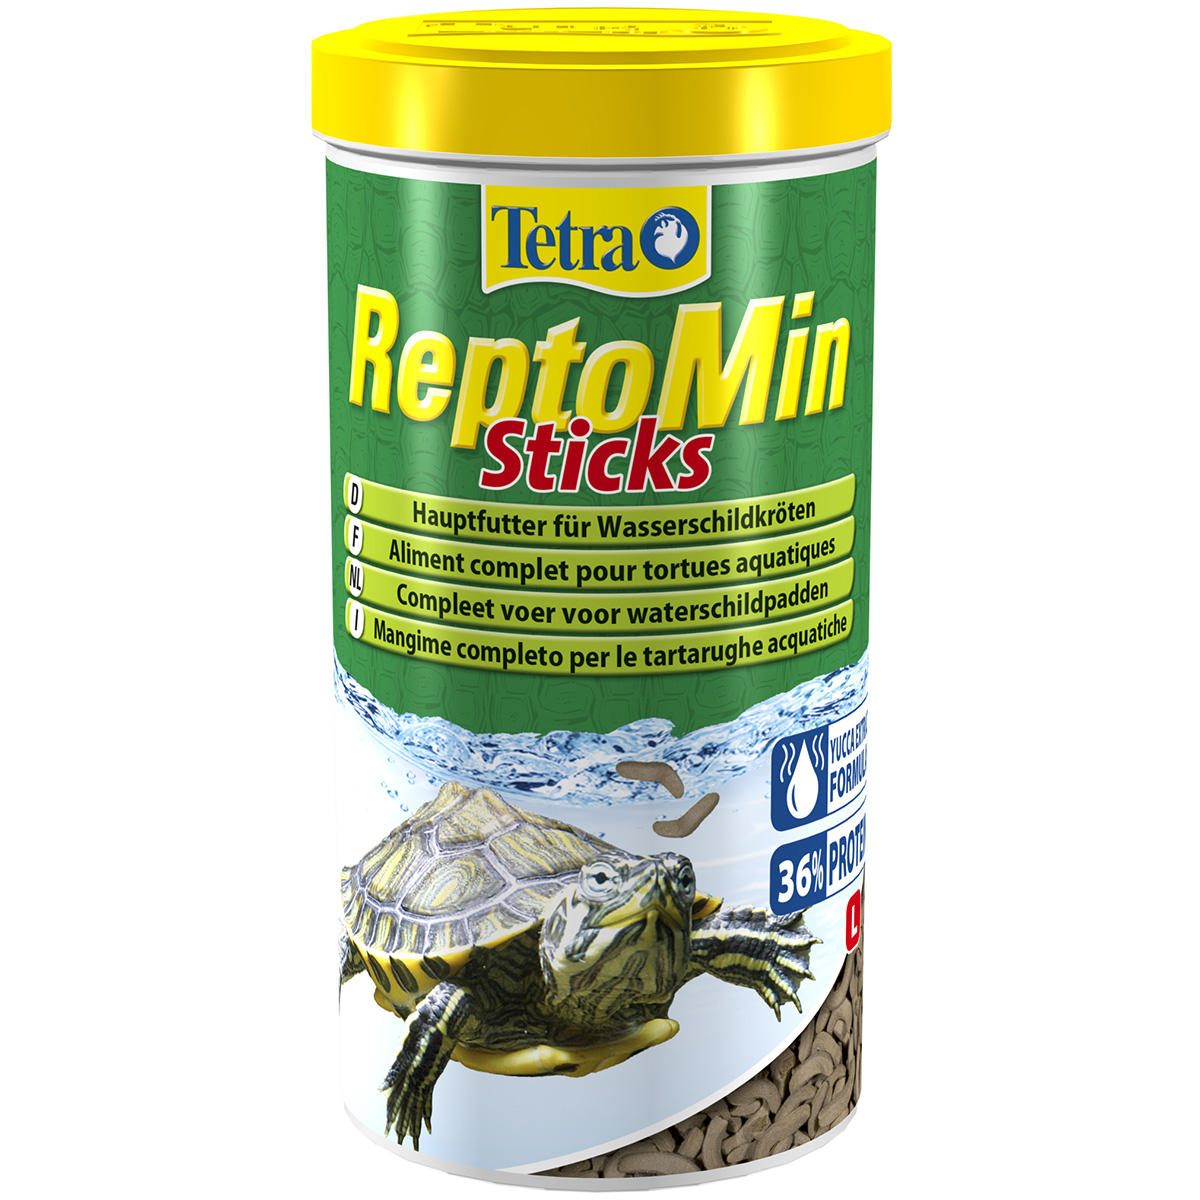 Tetra ReptoMin Schildkrötenfutter 2x1000ml